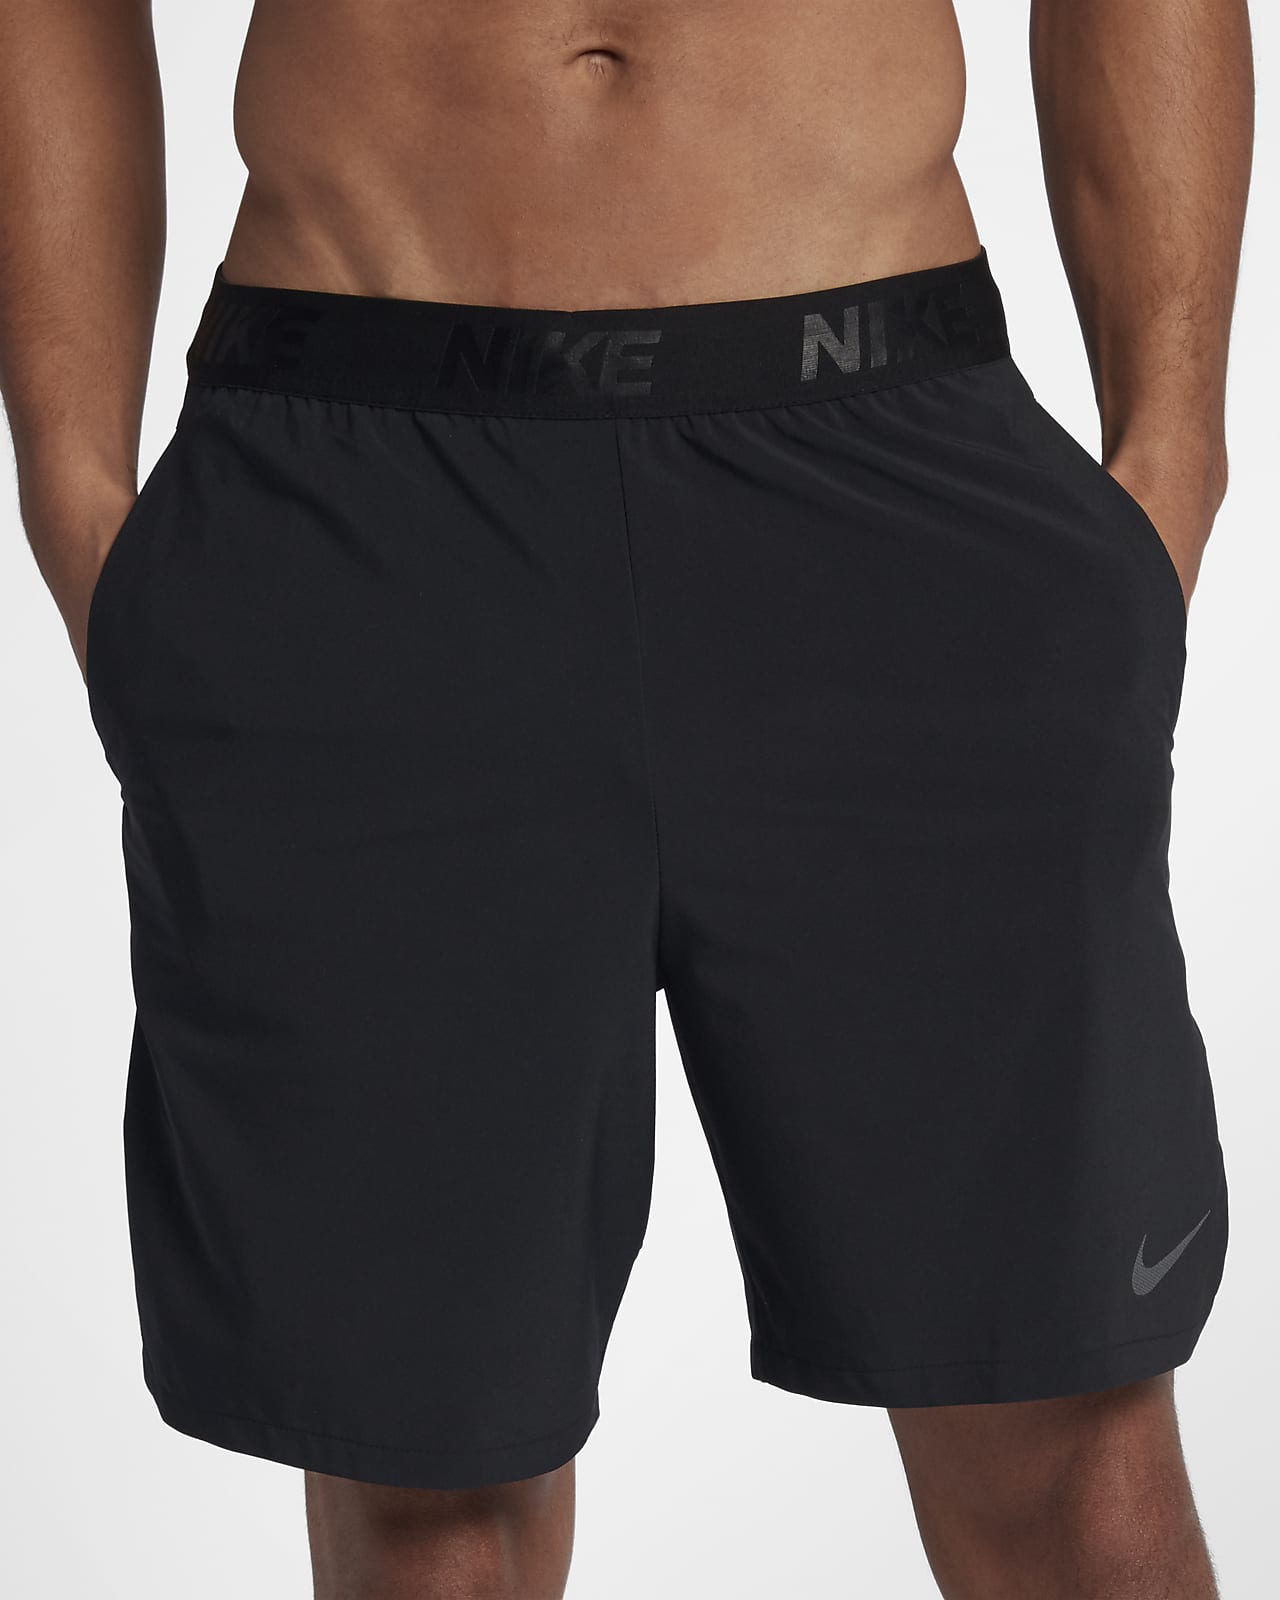 nike flex 8 inch shorts